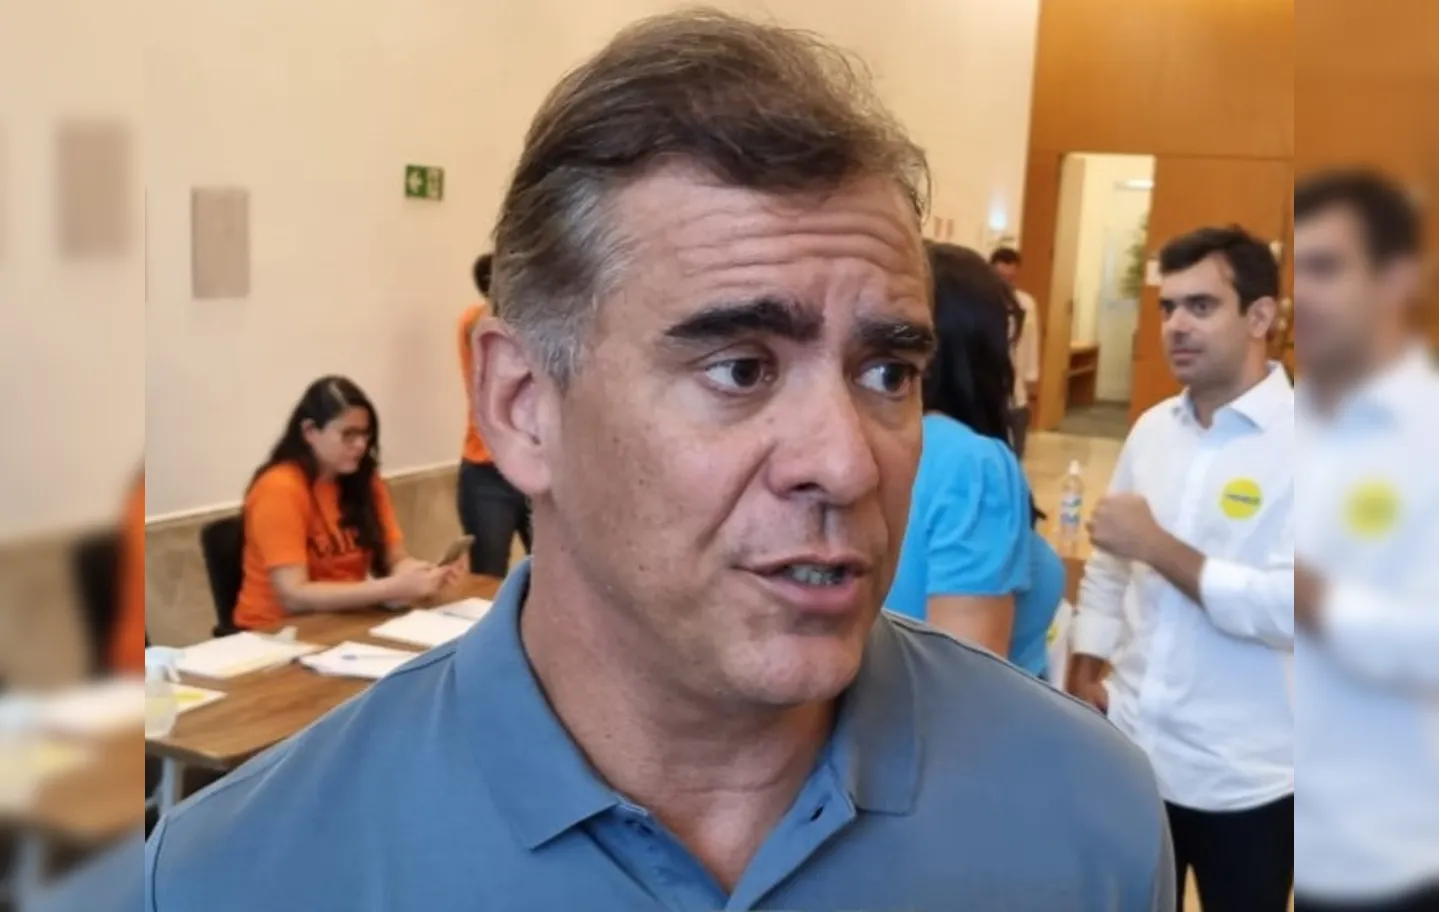 Leur Lomanto, deputado federal (União Brasil), criticou a postura de Antônio Brito no último evento político em Jequié